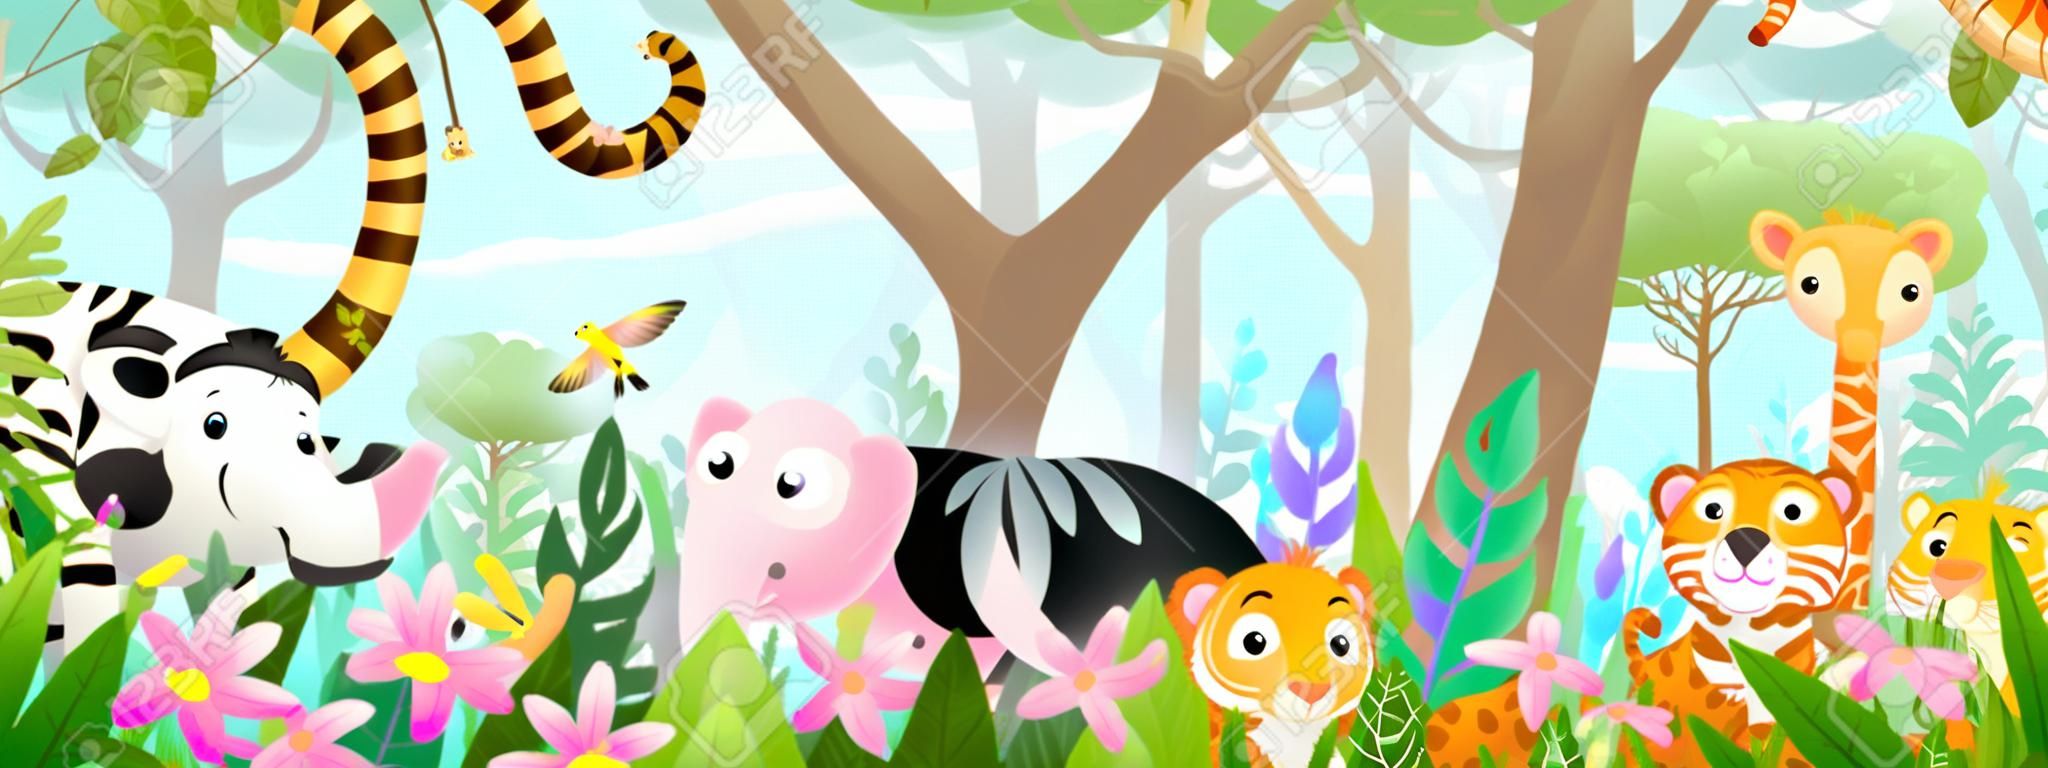 Enfants animaux dans la jungle amis mignons dans la forêt tropicale sauvage. De nombreux animaux de safari ou de zoo adorables dans la nature. Panorama horizontal pour enfants et enfants, illustration d'art vectoriel.